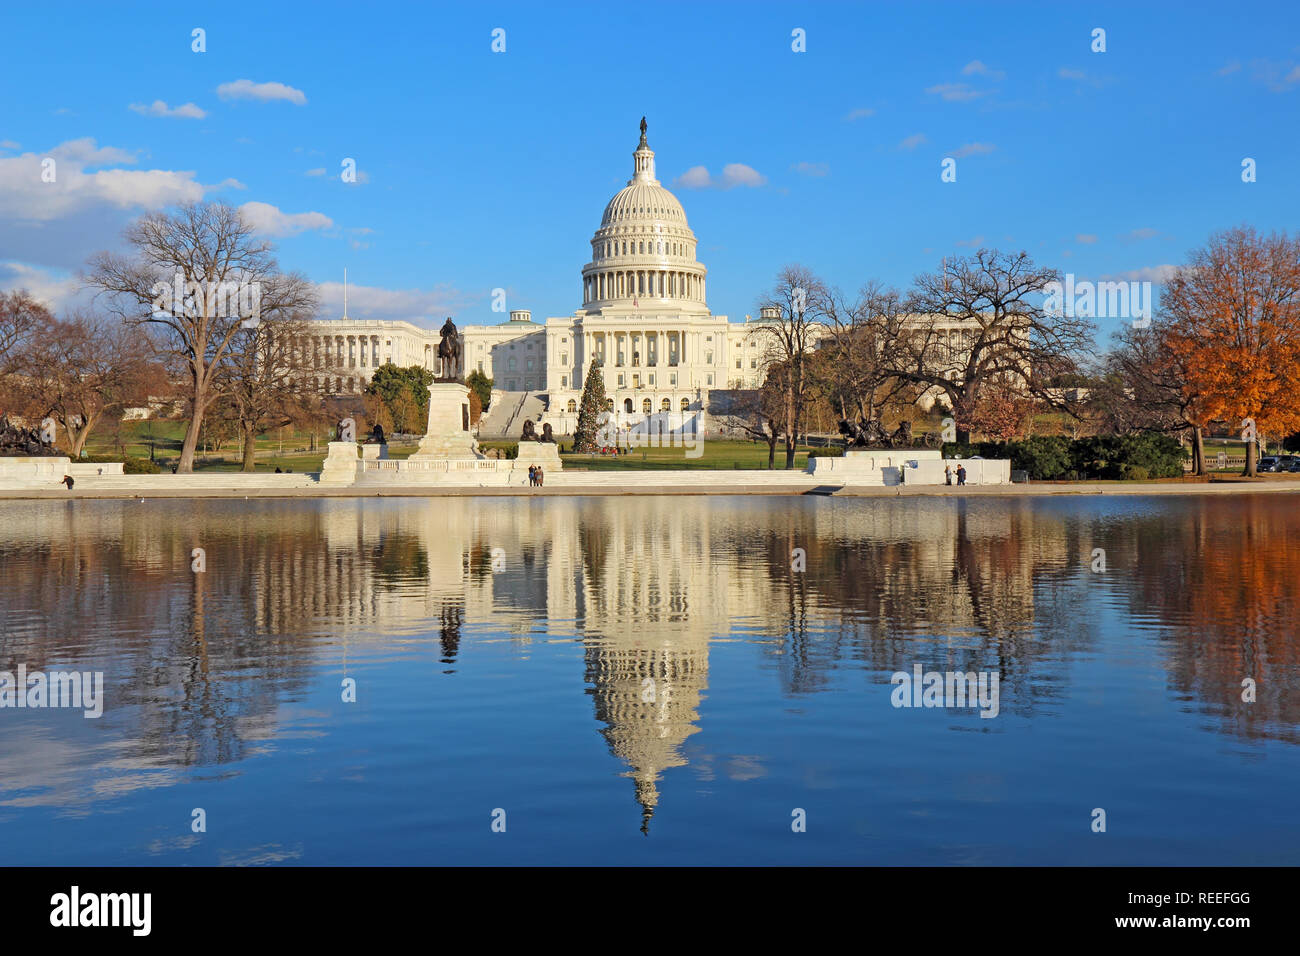 El lado oeste del Capitolio de los Estados Unidos y Ulysses S Grant memorial en Washington, DC se refleja en la piscina reflectante con la Navidad de tre Foto de stock